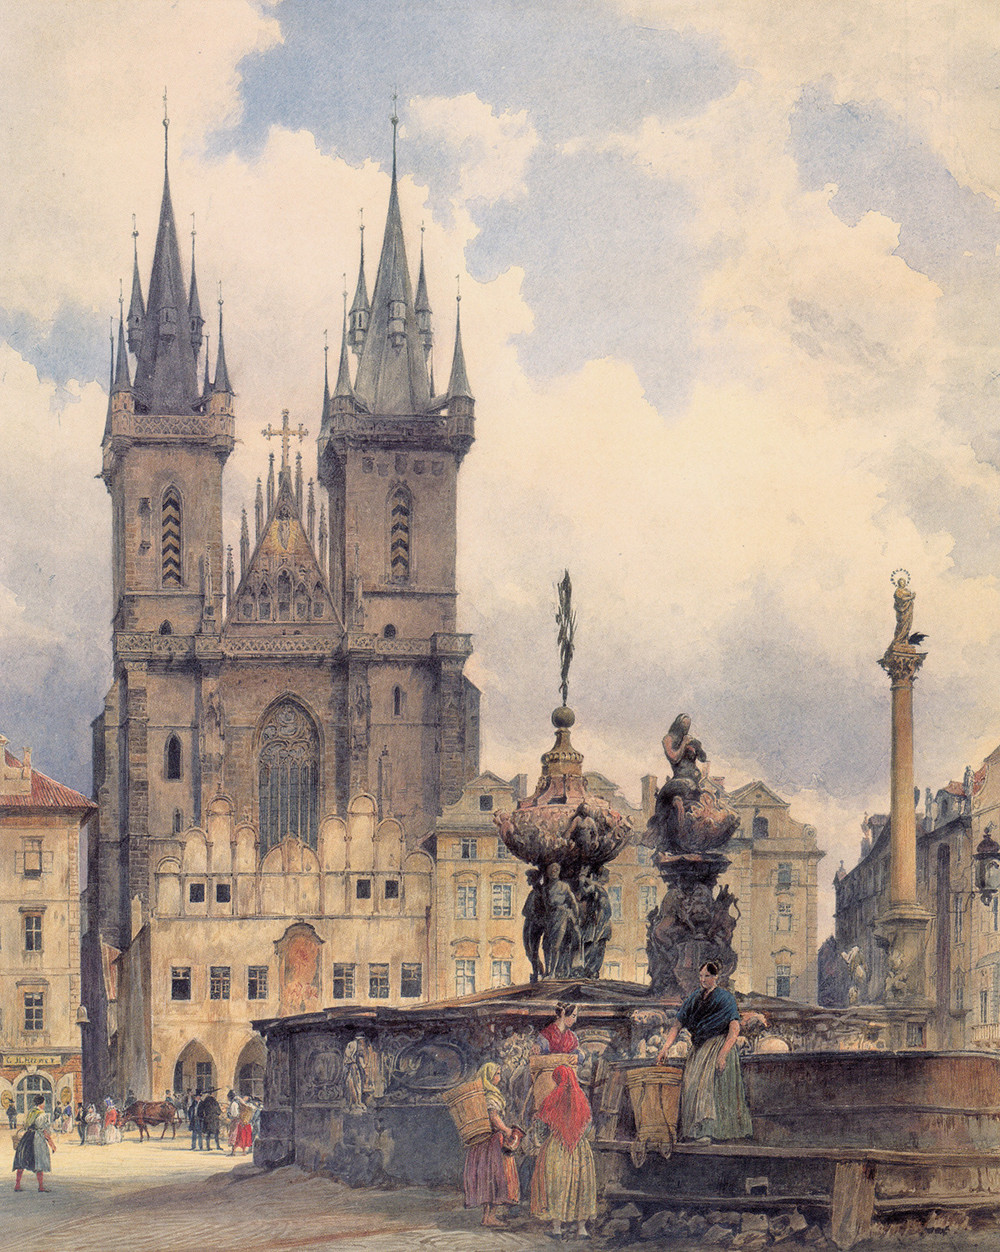 The Tyn Church in Prague by Rudolf von Alt, 1843